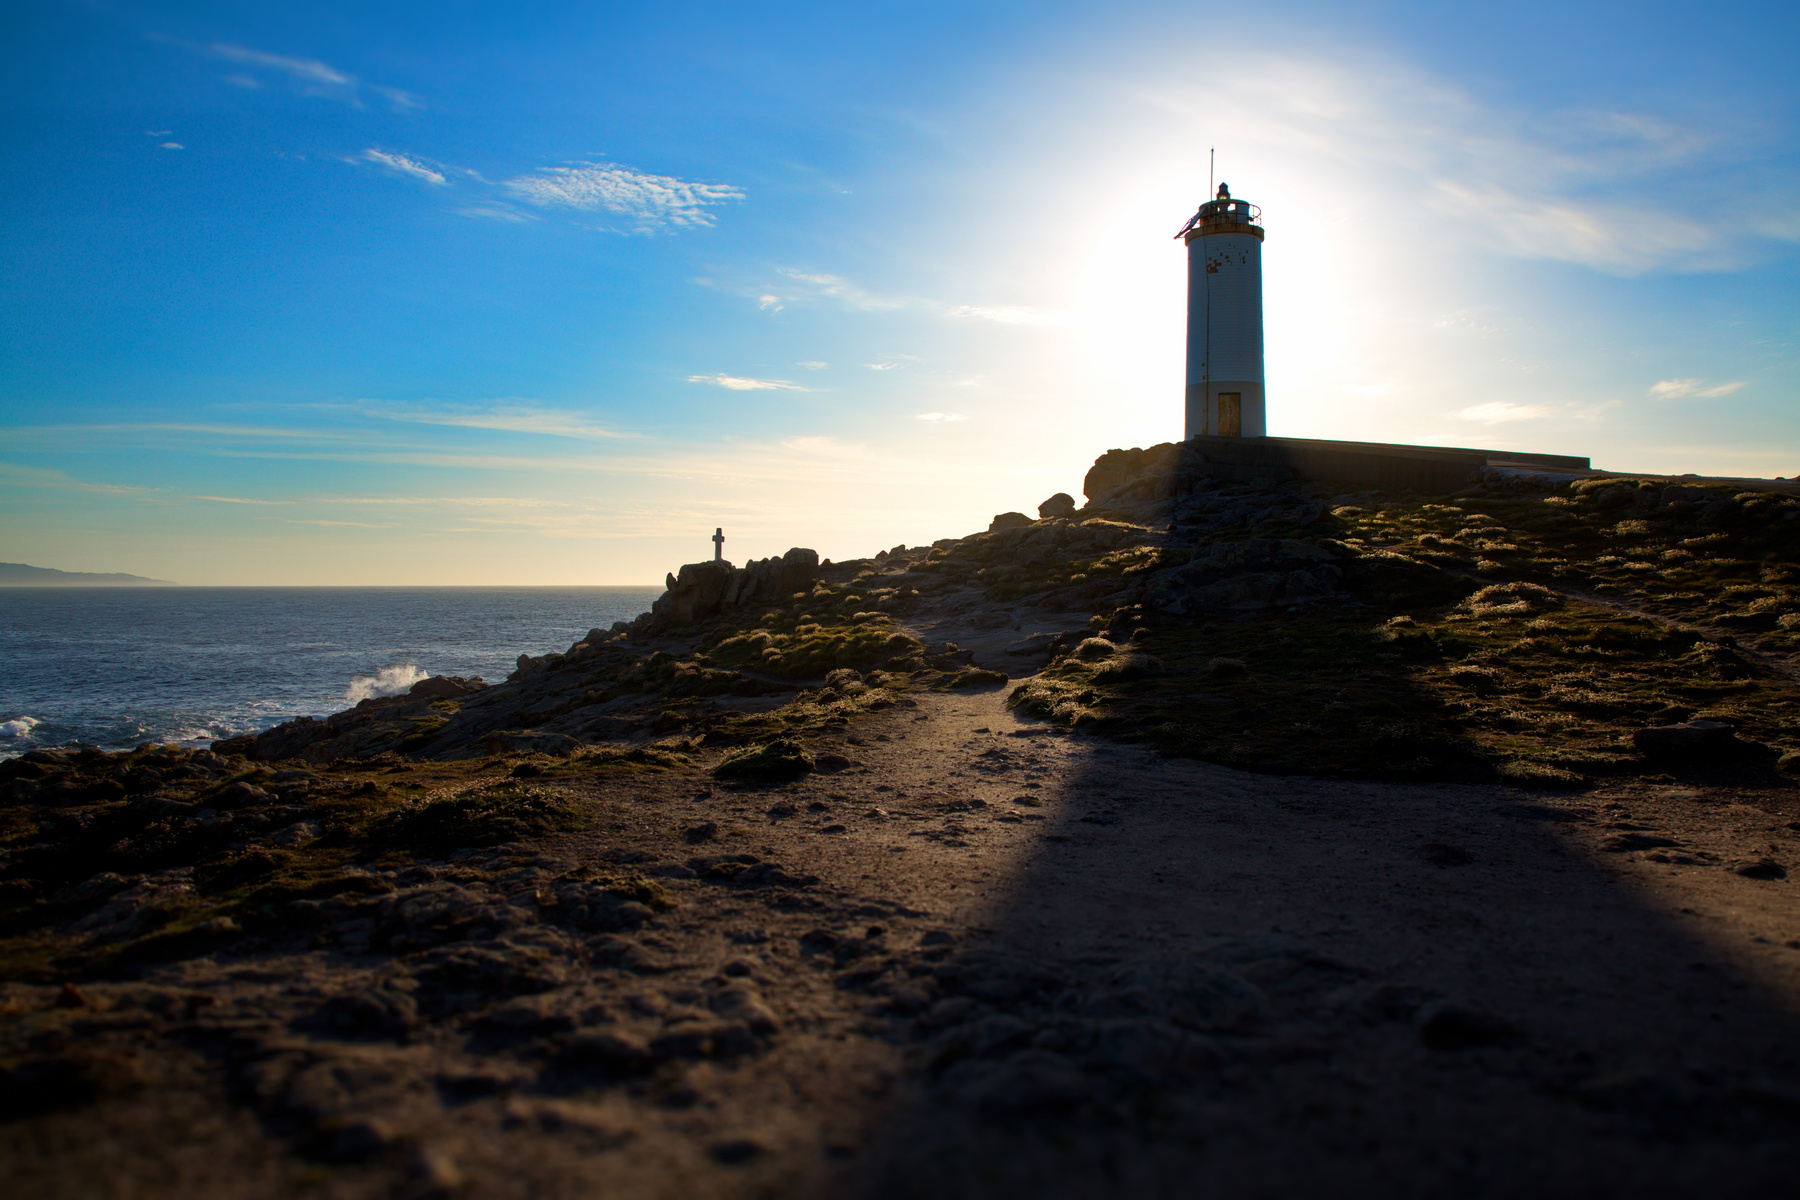 Маяк Испания Страна Басков маяки Атлантический океан